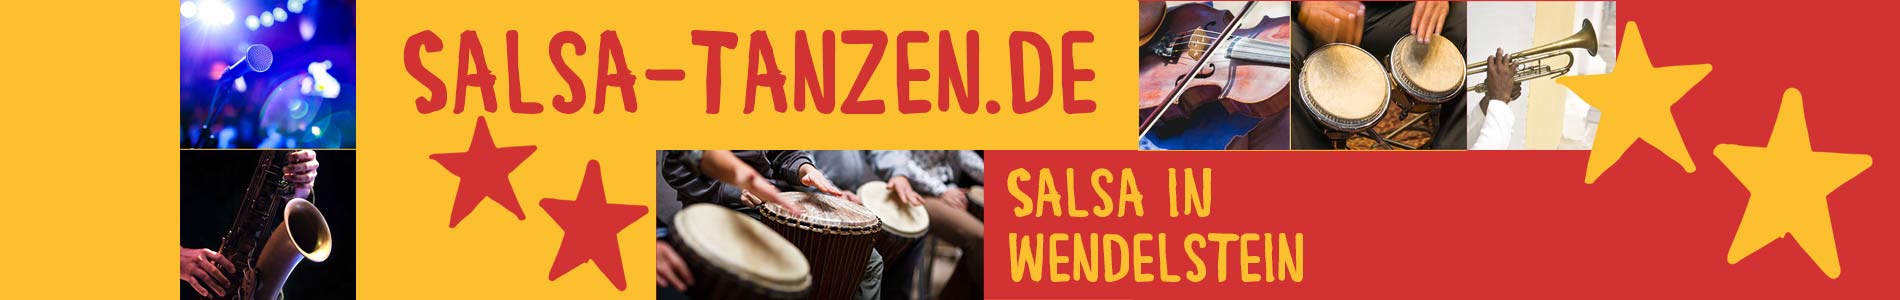 Salsa in Wendelstein – Salsa lernen und tanzen, Tanzkurse, Partys, Veranstaltungen